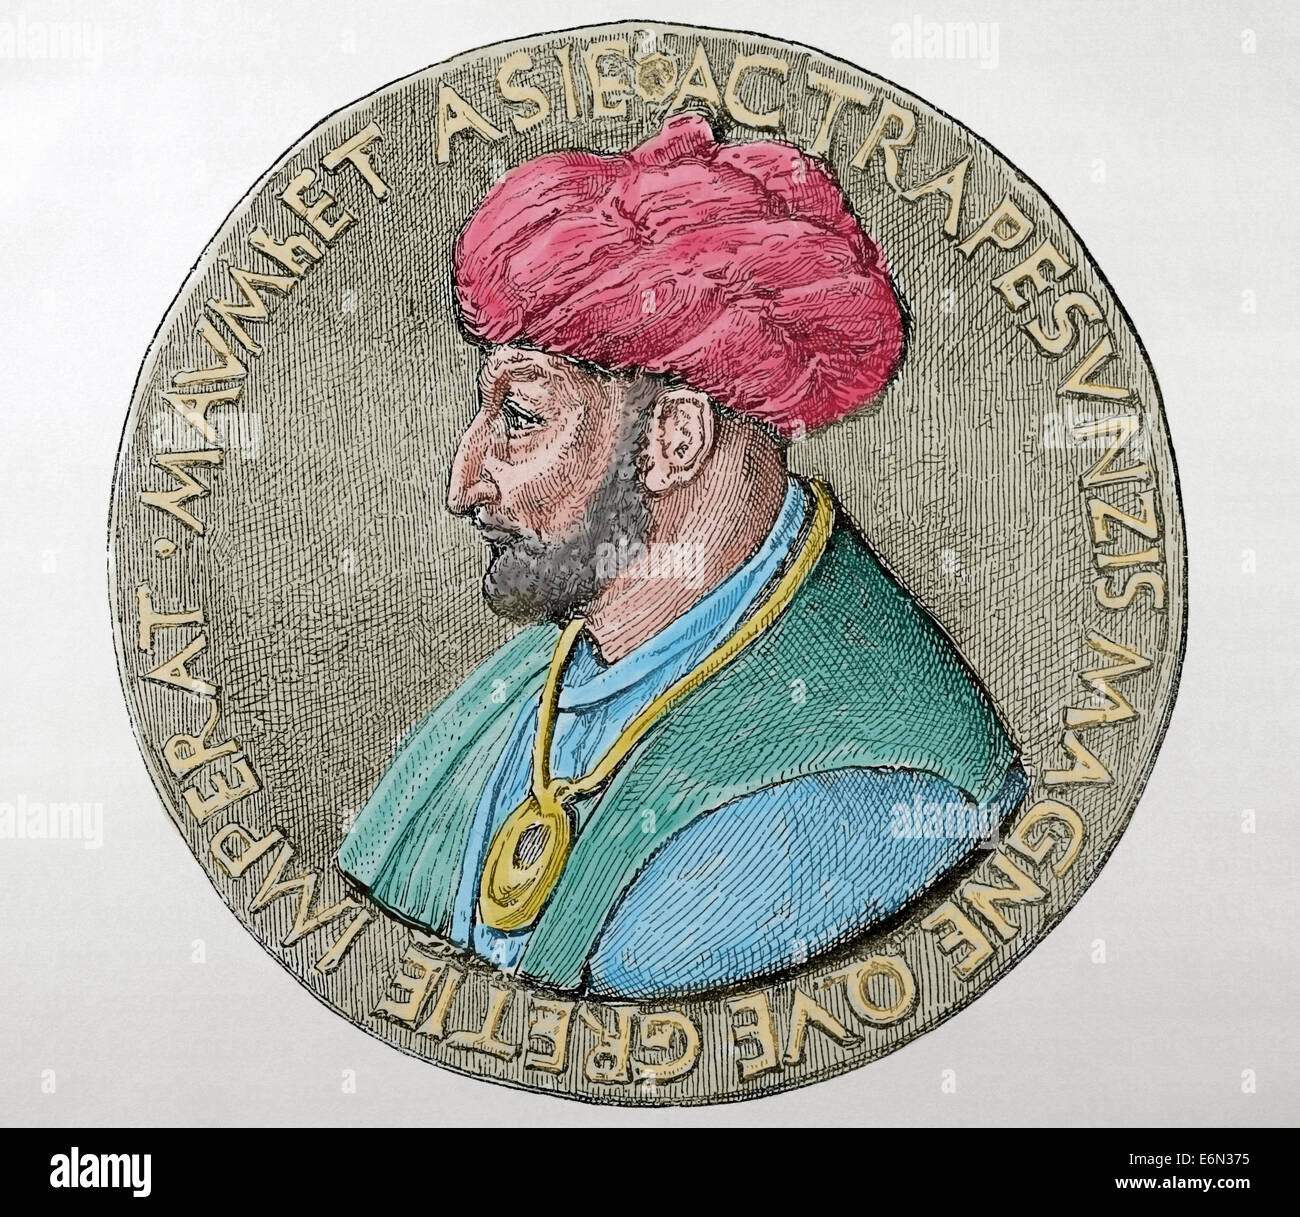 Mehmet III (1429-1481), chiamato Fatih (conquistatore). Bagno turco sultano ottomano (1451-1481). Conquistarono Costantinopoli. Colorati. Foto Stock